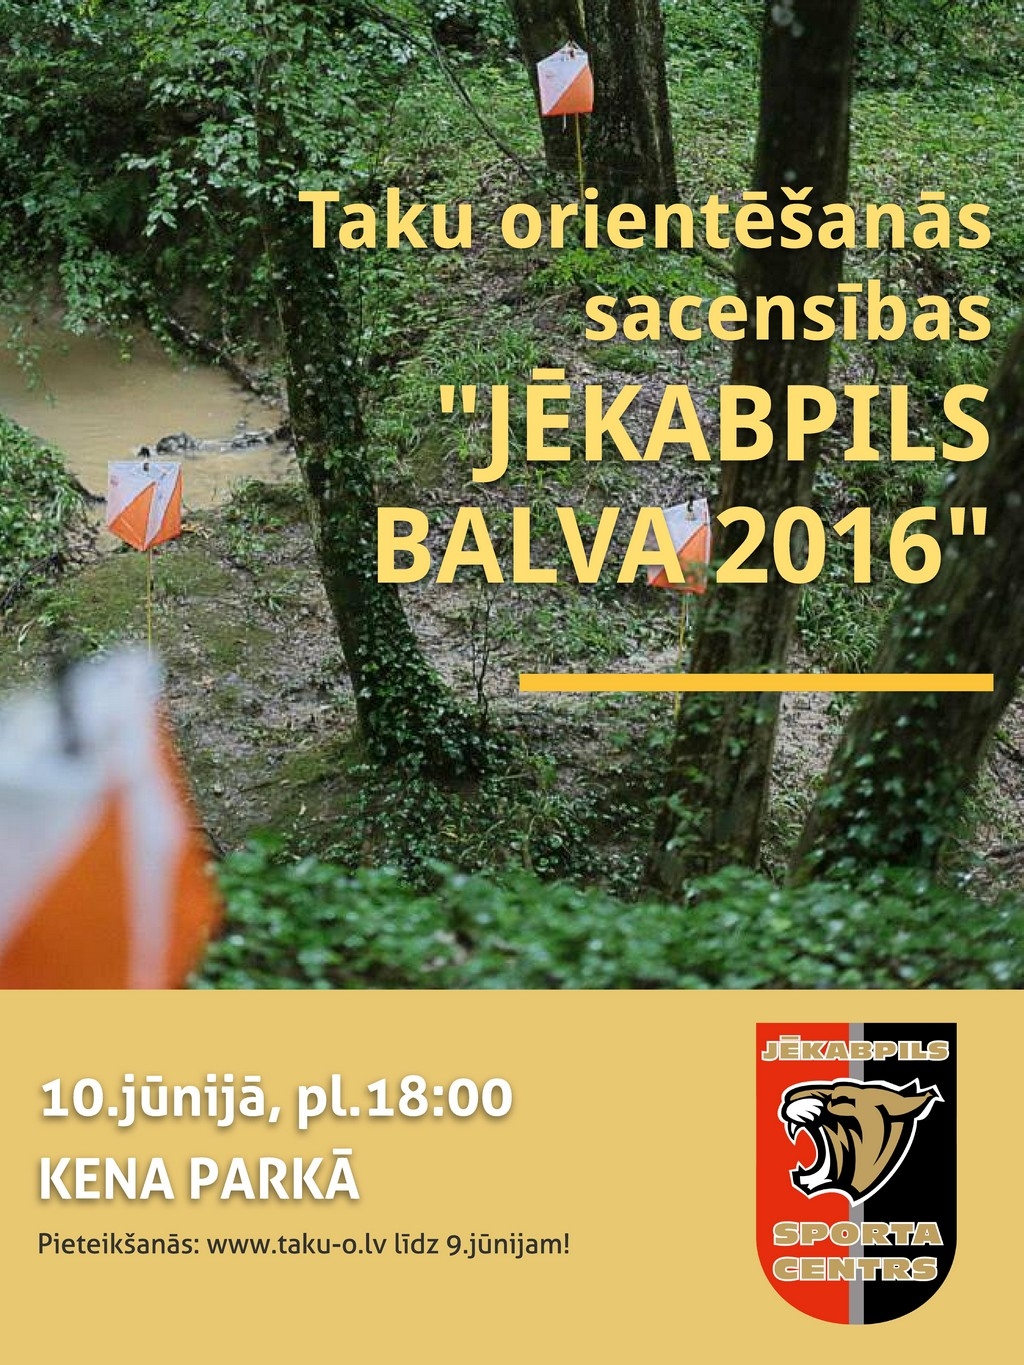 Kena parkā notiks Taku orientēšanās sacensības “Jēkabpils balva 2016”